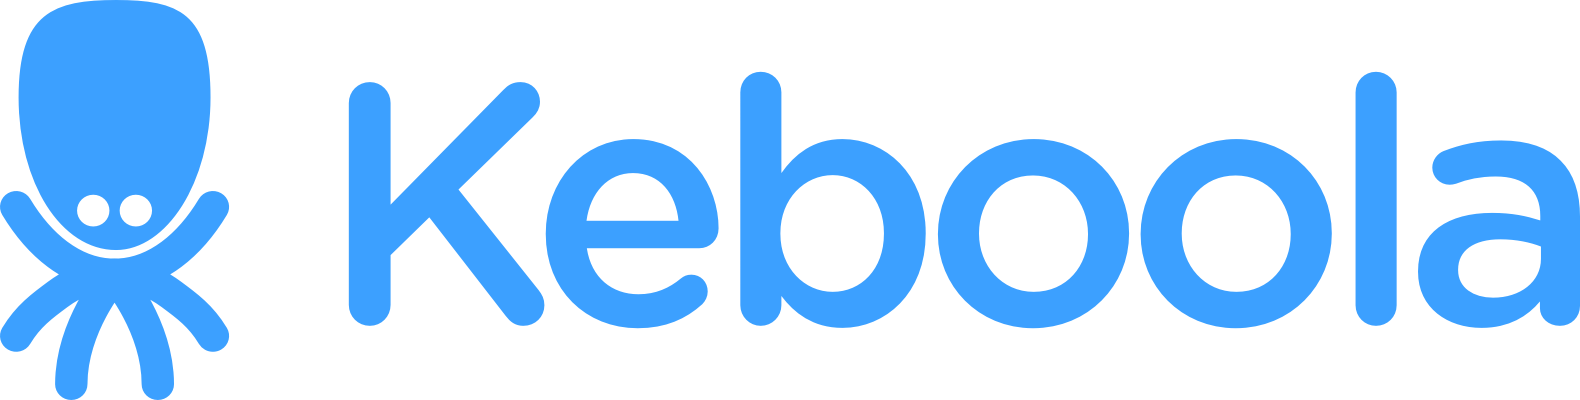 Keboola